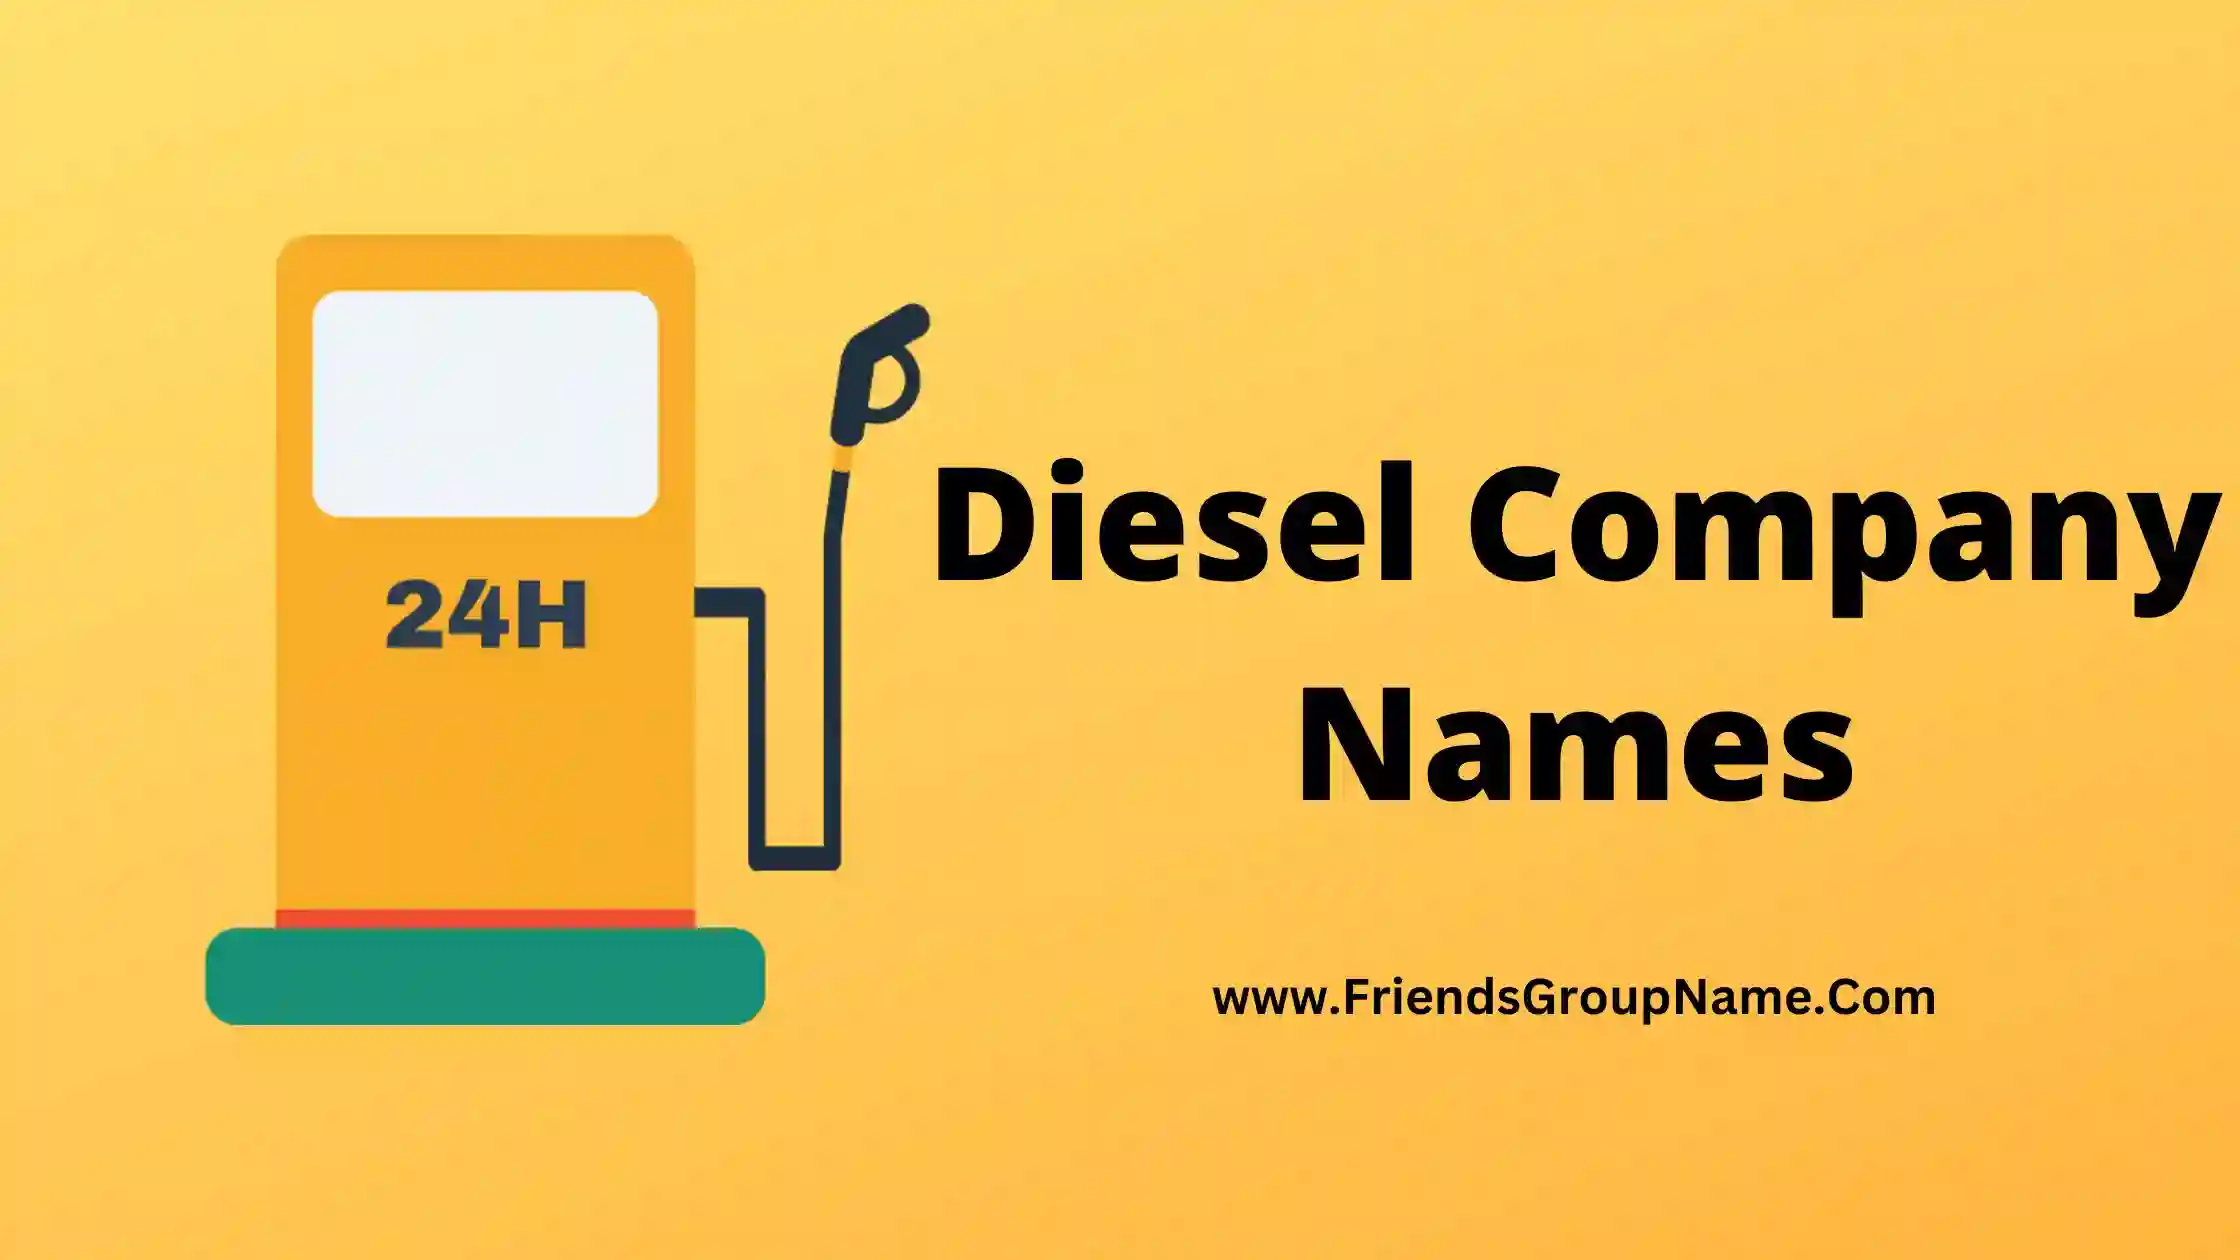 Diesel Company Names